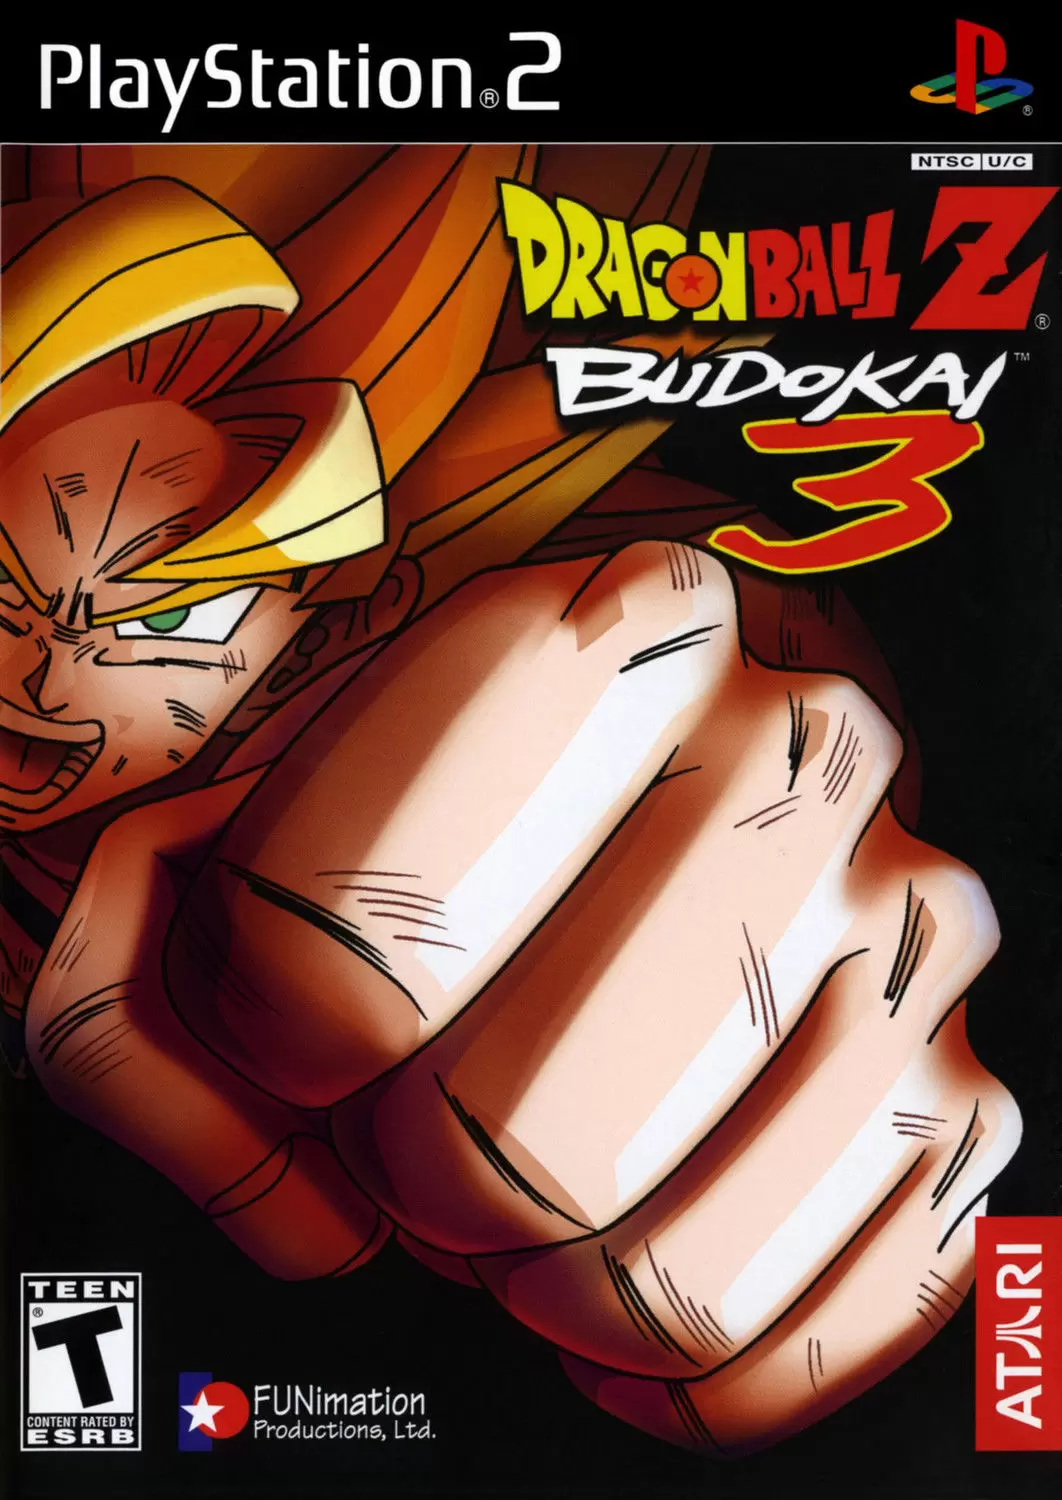 PS2 Games - Dragon Ball Z: Budokai 3